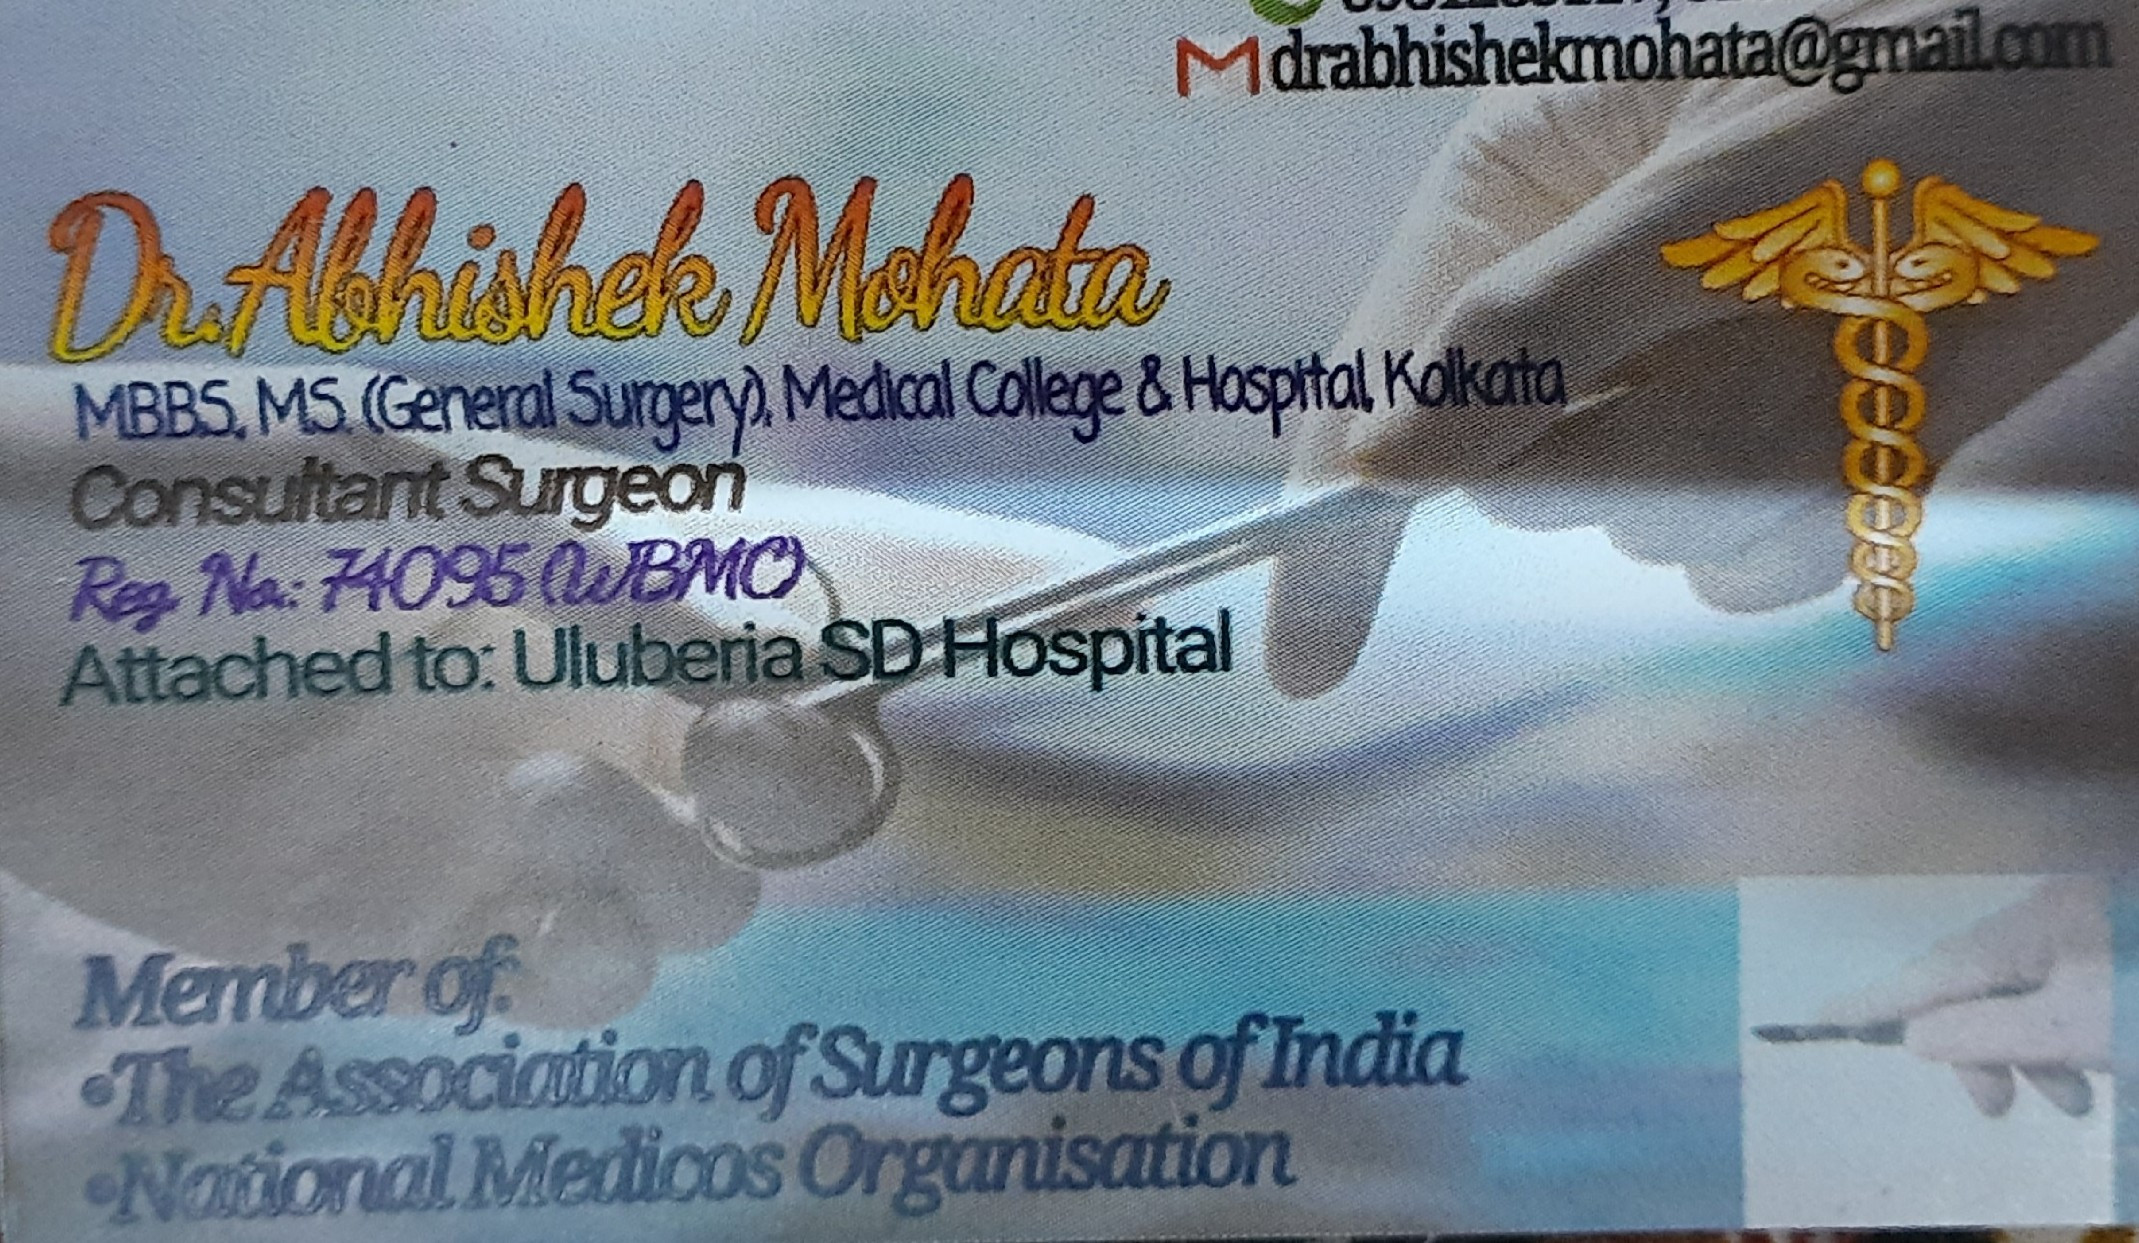 Sushruta Clinic